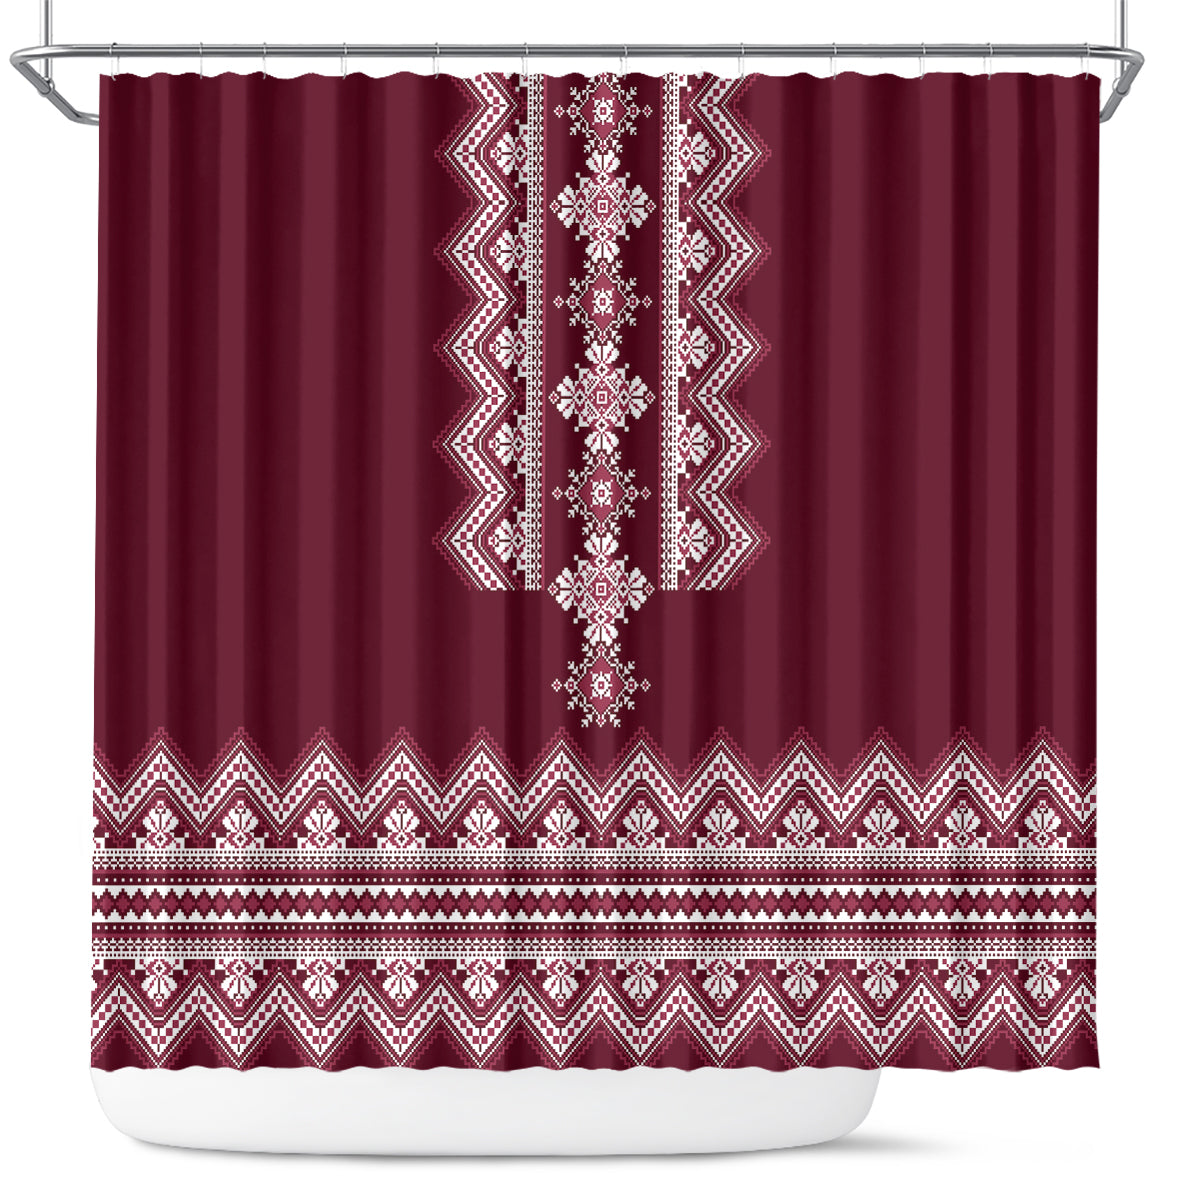 ukraine-folk-pattern-shower-curtain-ukrainian-wine-red-version